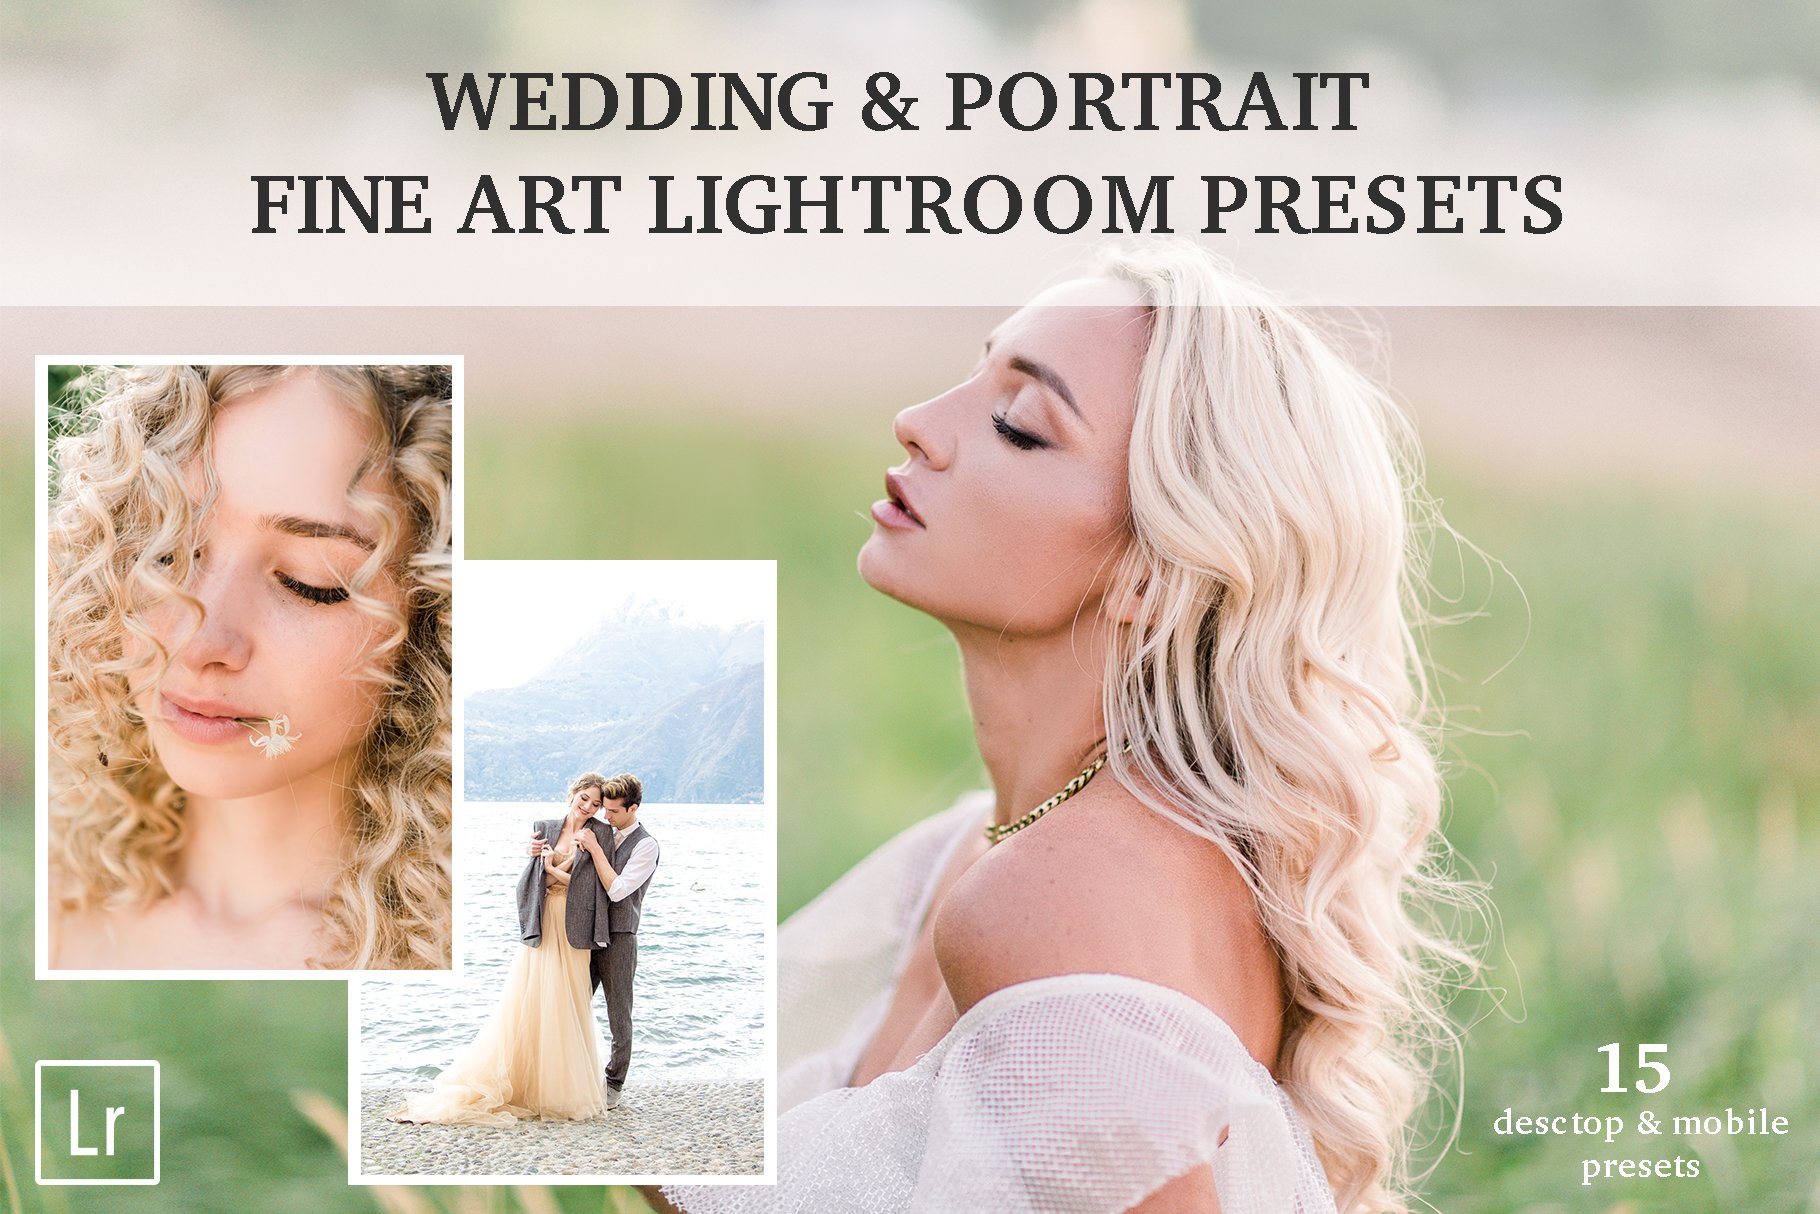 Wedding Fine Art Lightroom Presetscover image.